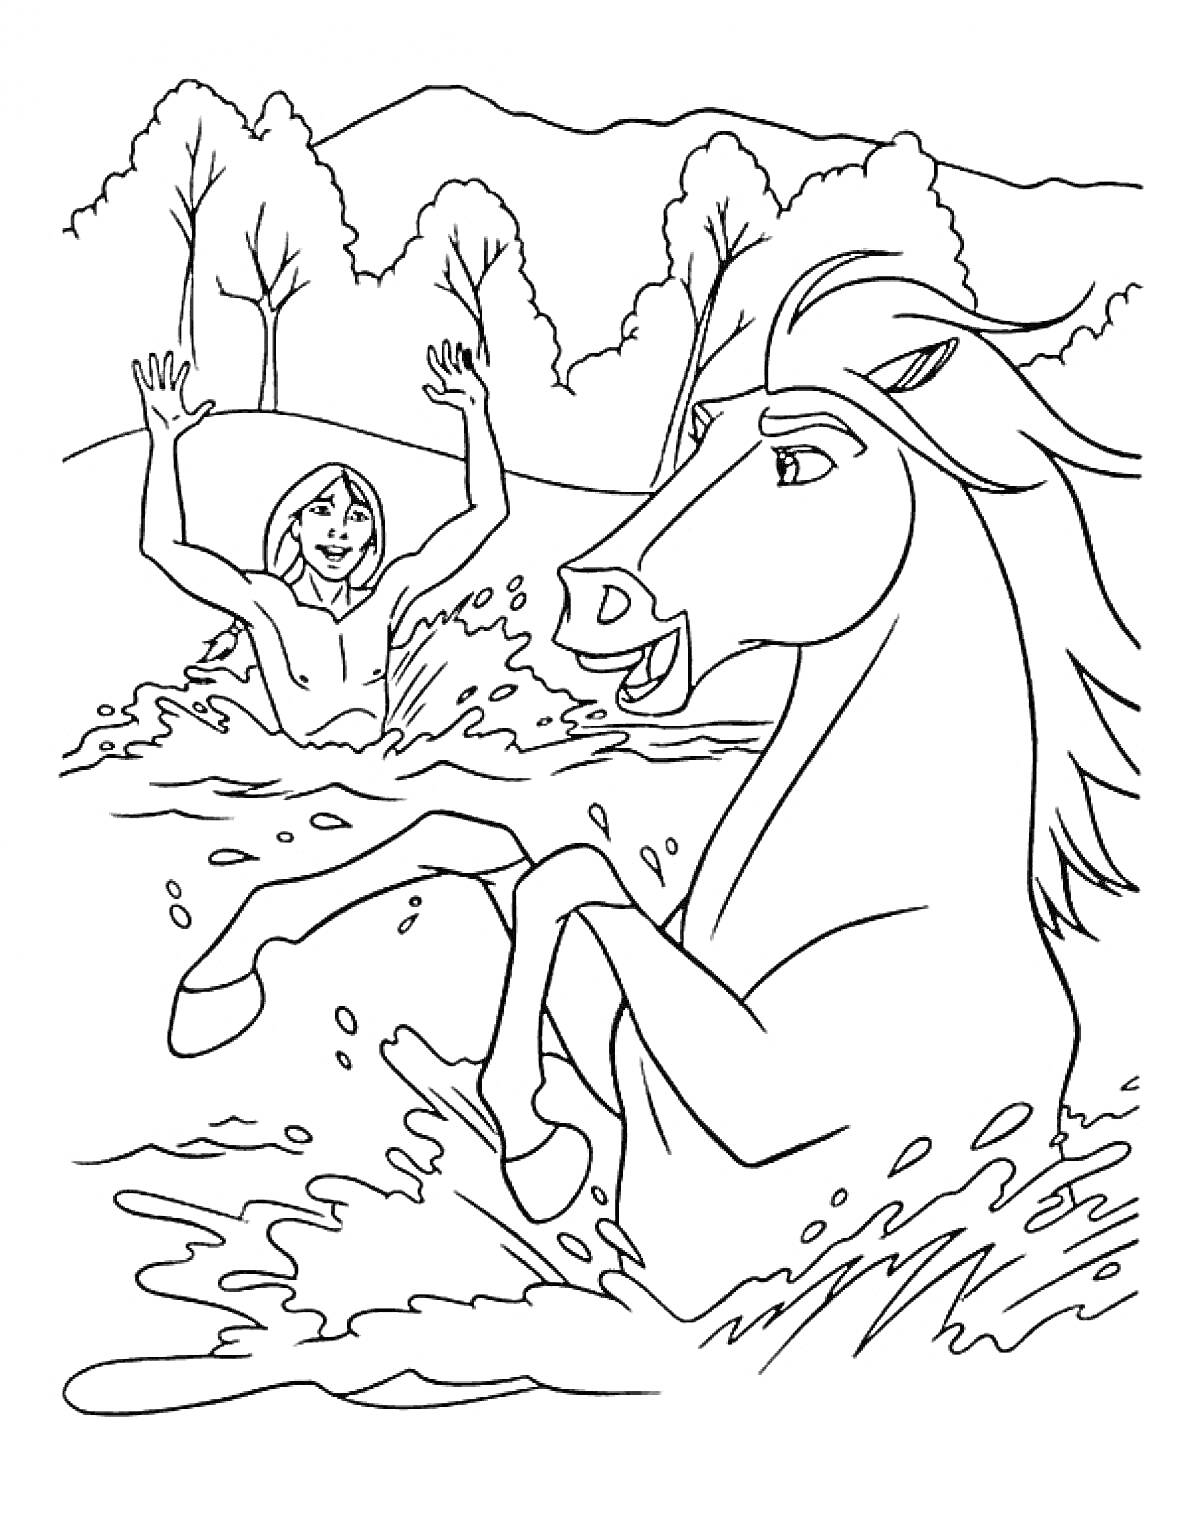 Человек в воде с поднятыми руками и лошадь, стоящая на задних ногах в реке на фоне деревьев и холмов.